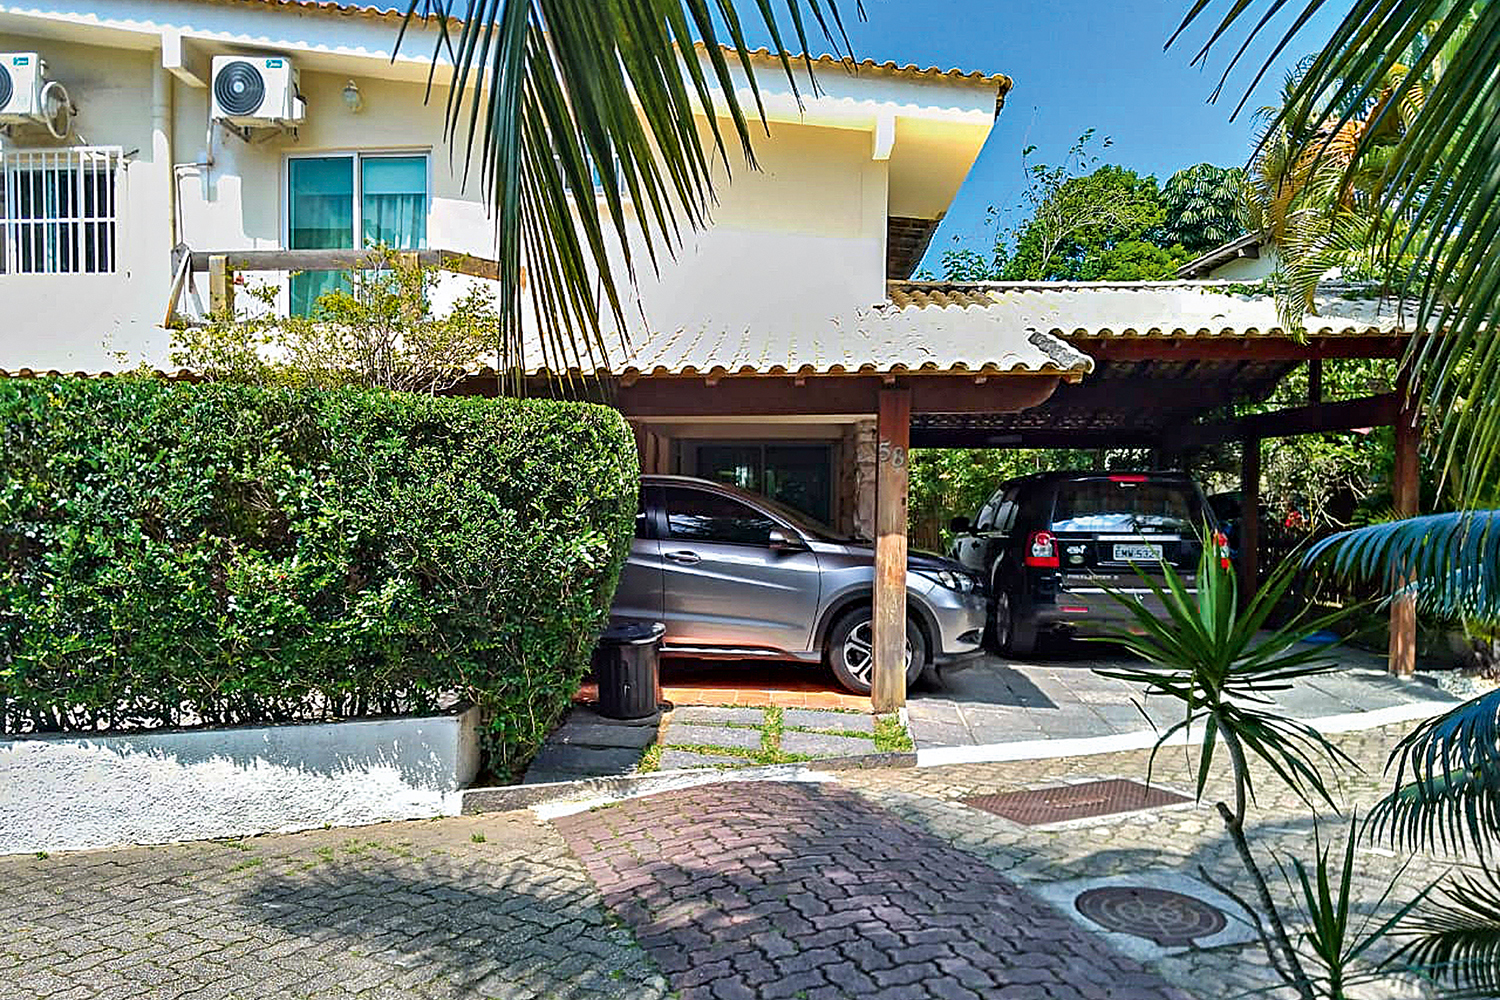 “ELEVADO PADRÃO” - A casa do deputado num condomínio de luxo no Rio de Janeiro